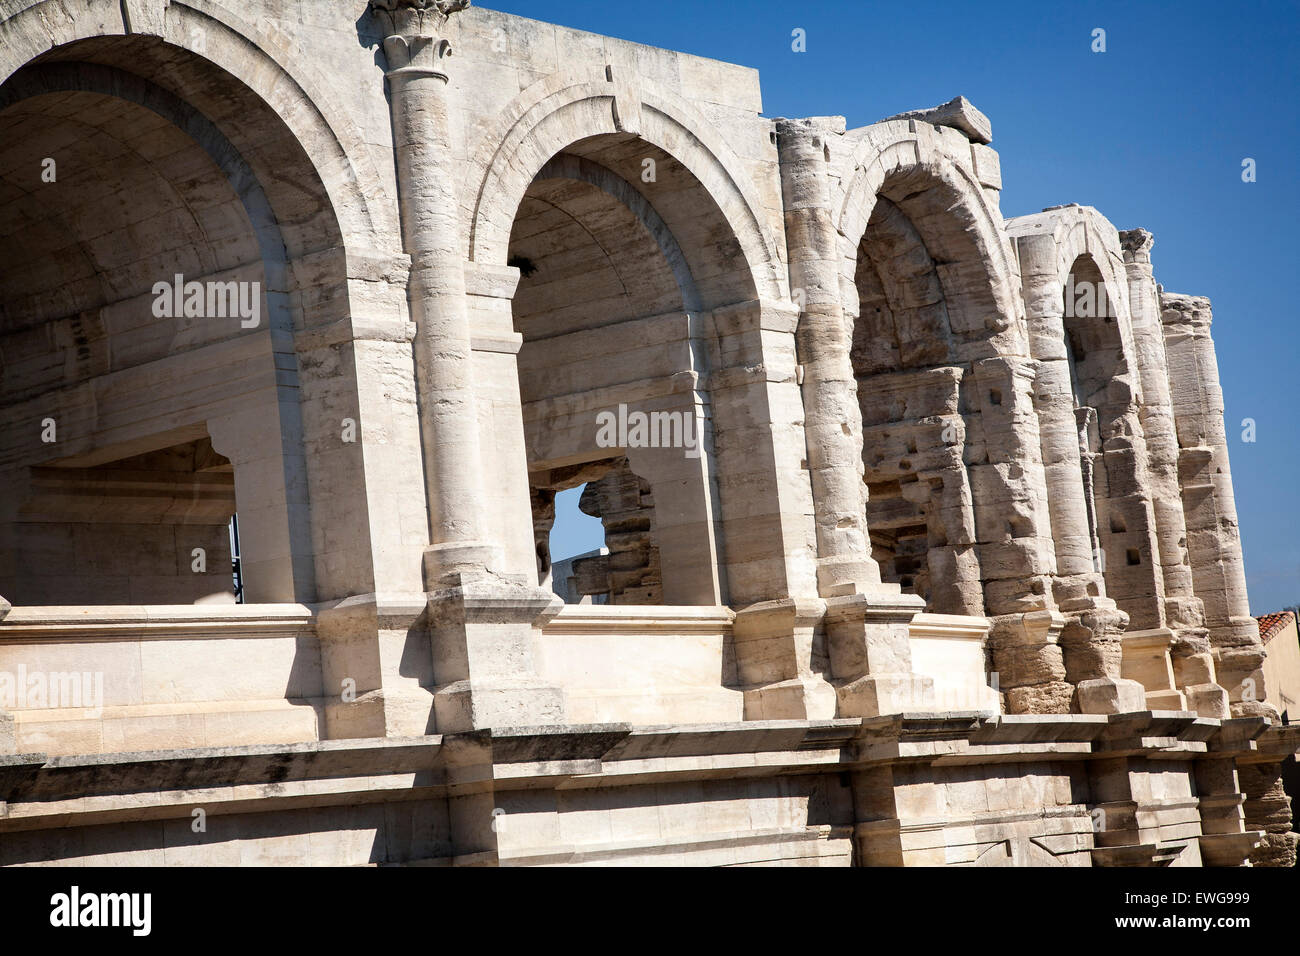 La fachada de la arena romana en Arles, Francia. Foto de stock